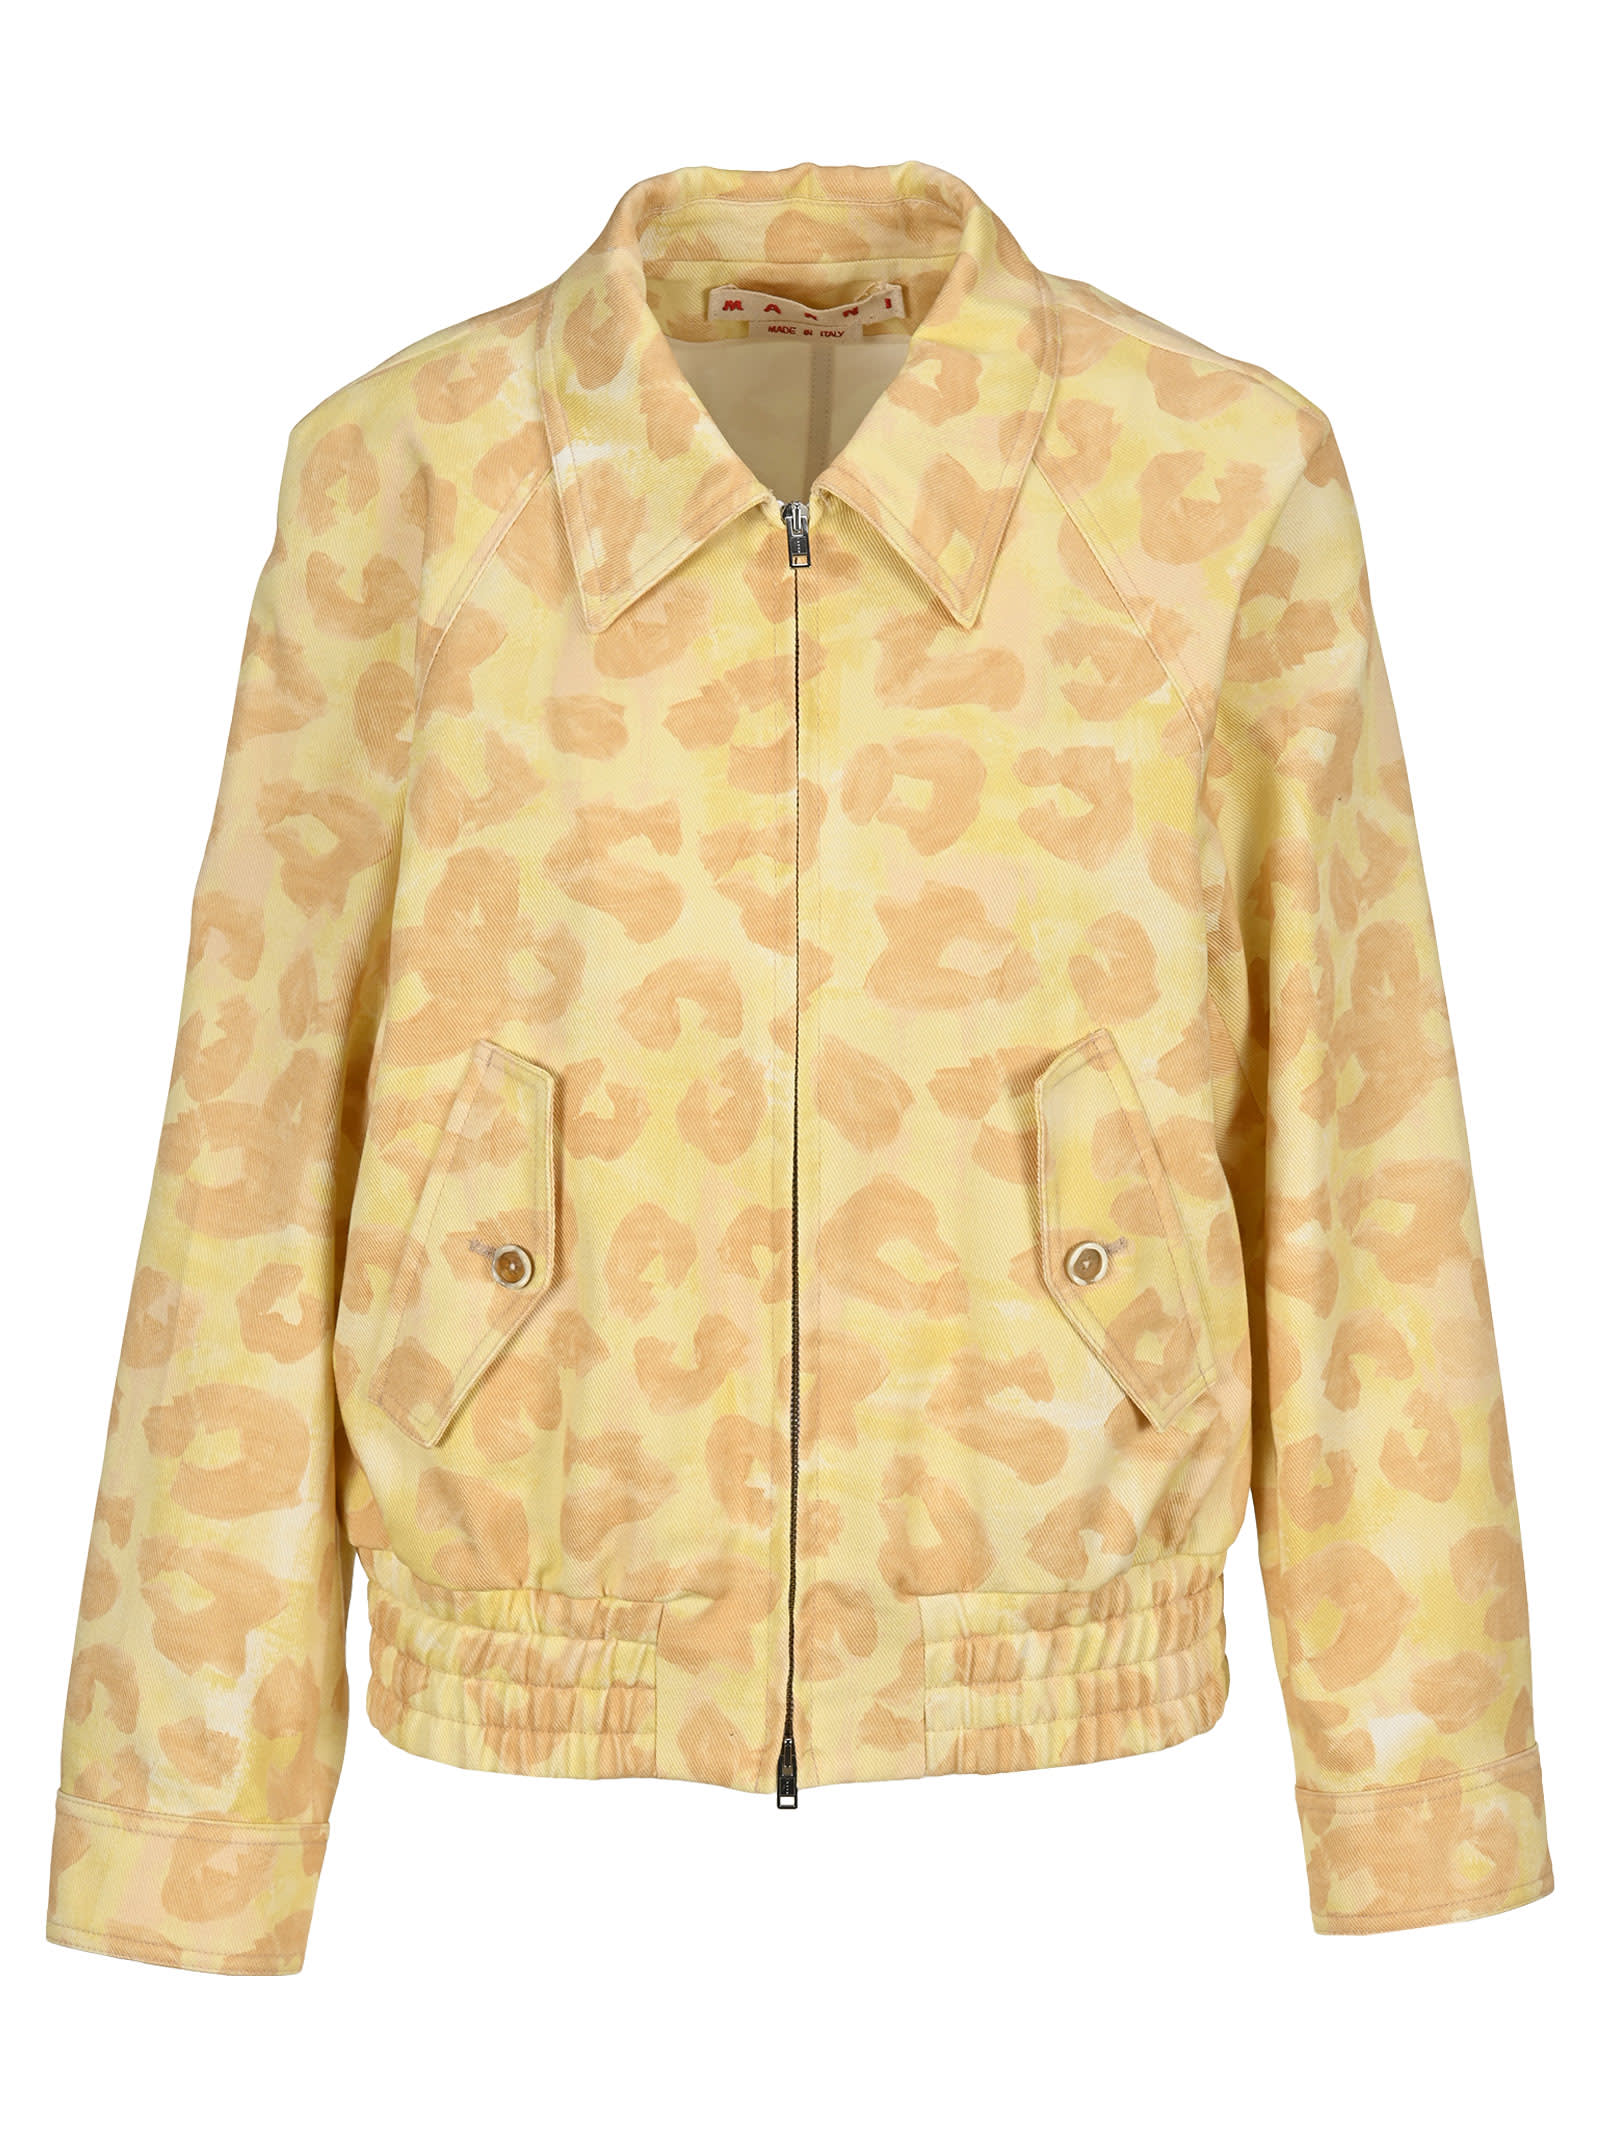 Marni Leopard Print Jacket